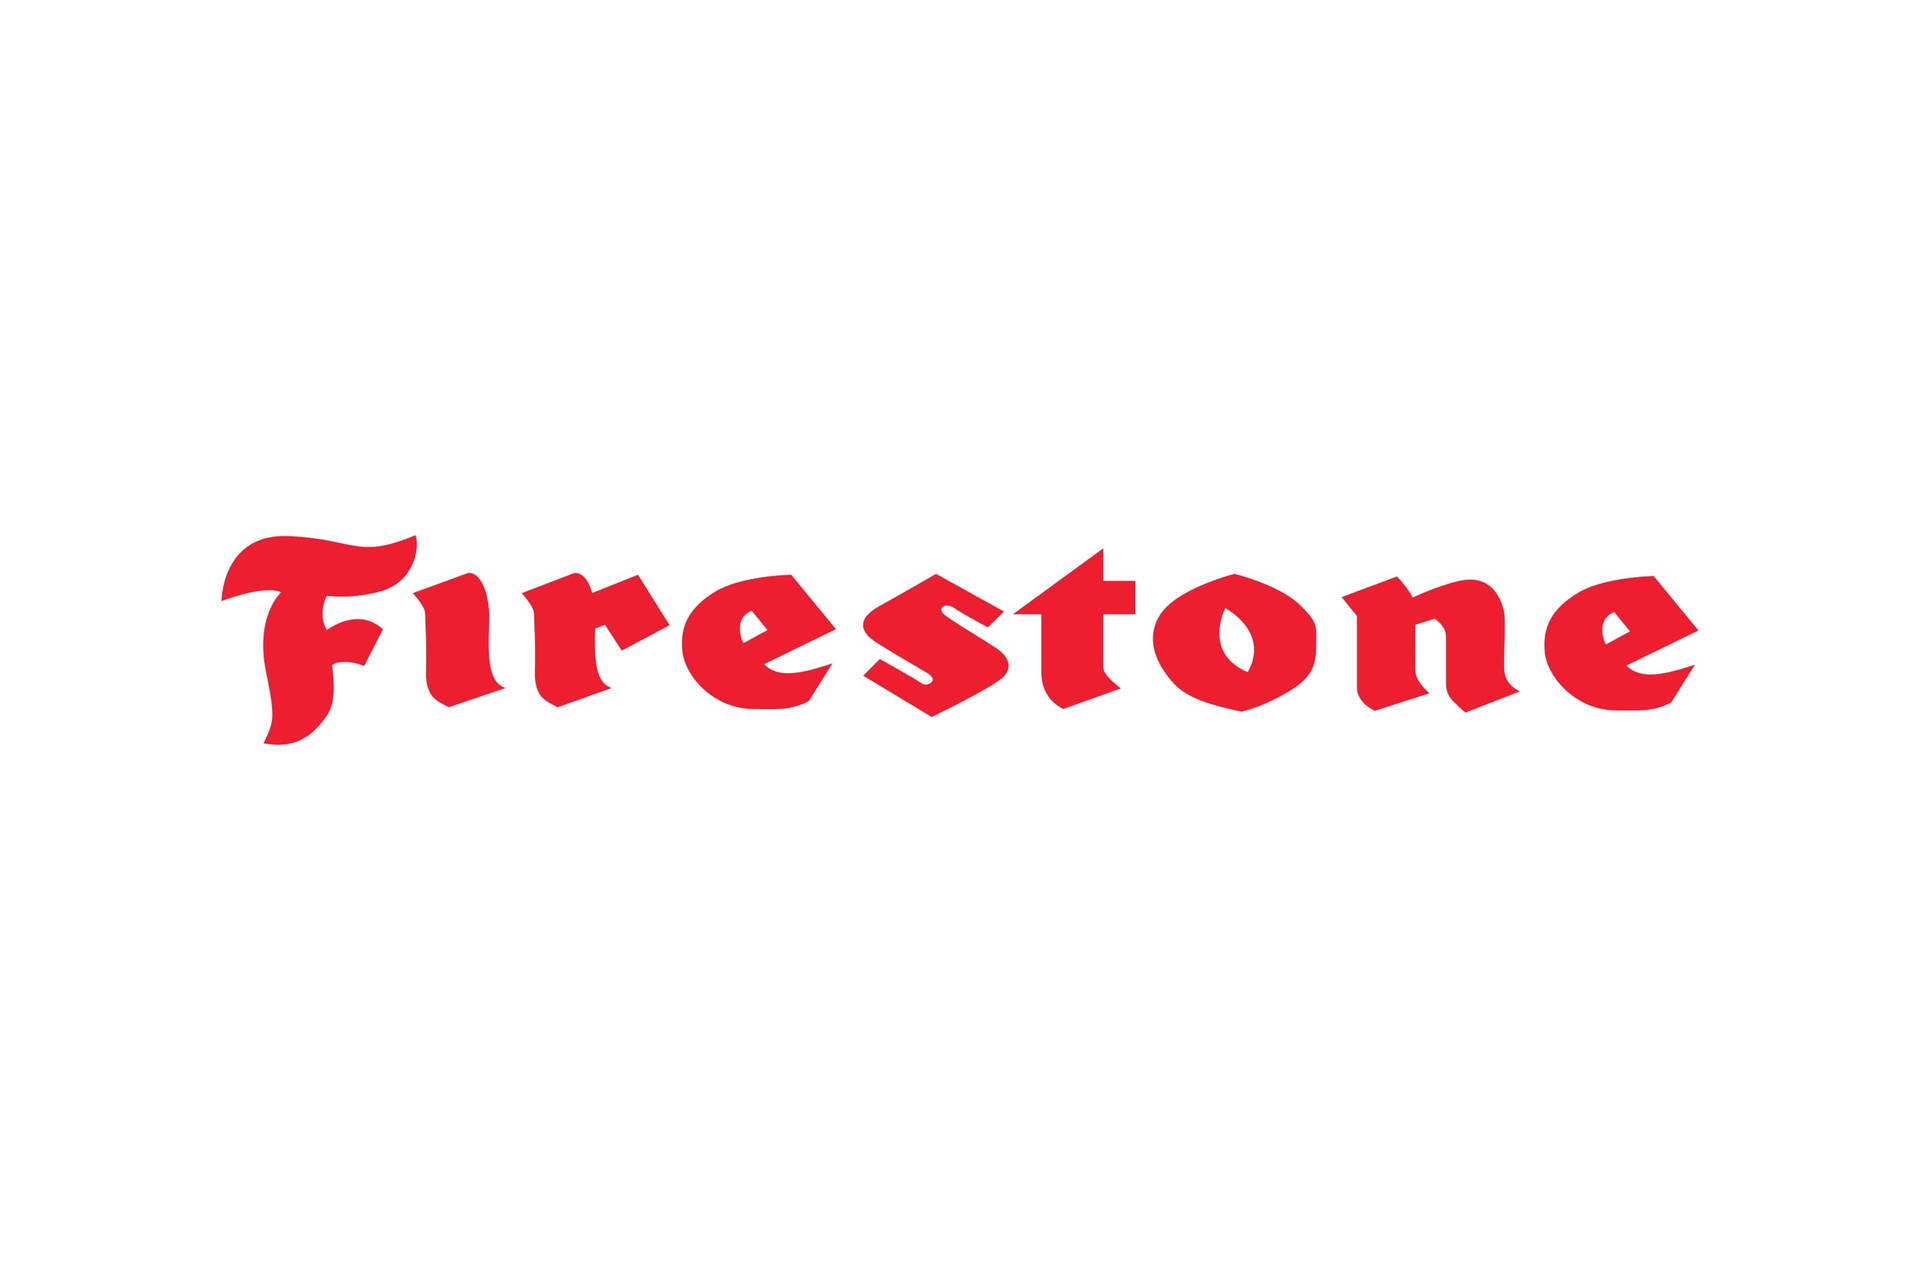 Firestone 3000 X 2000 Wallpaper